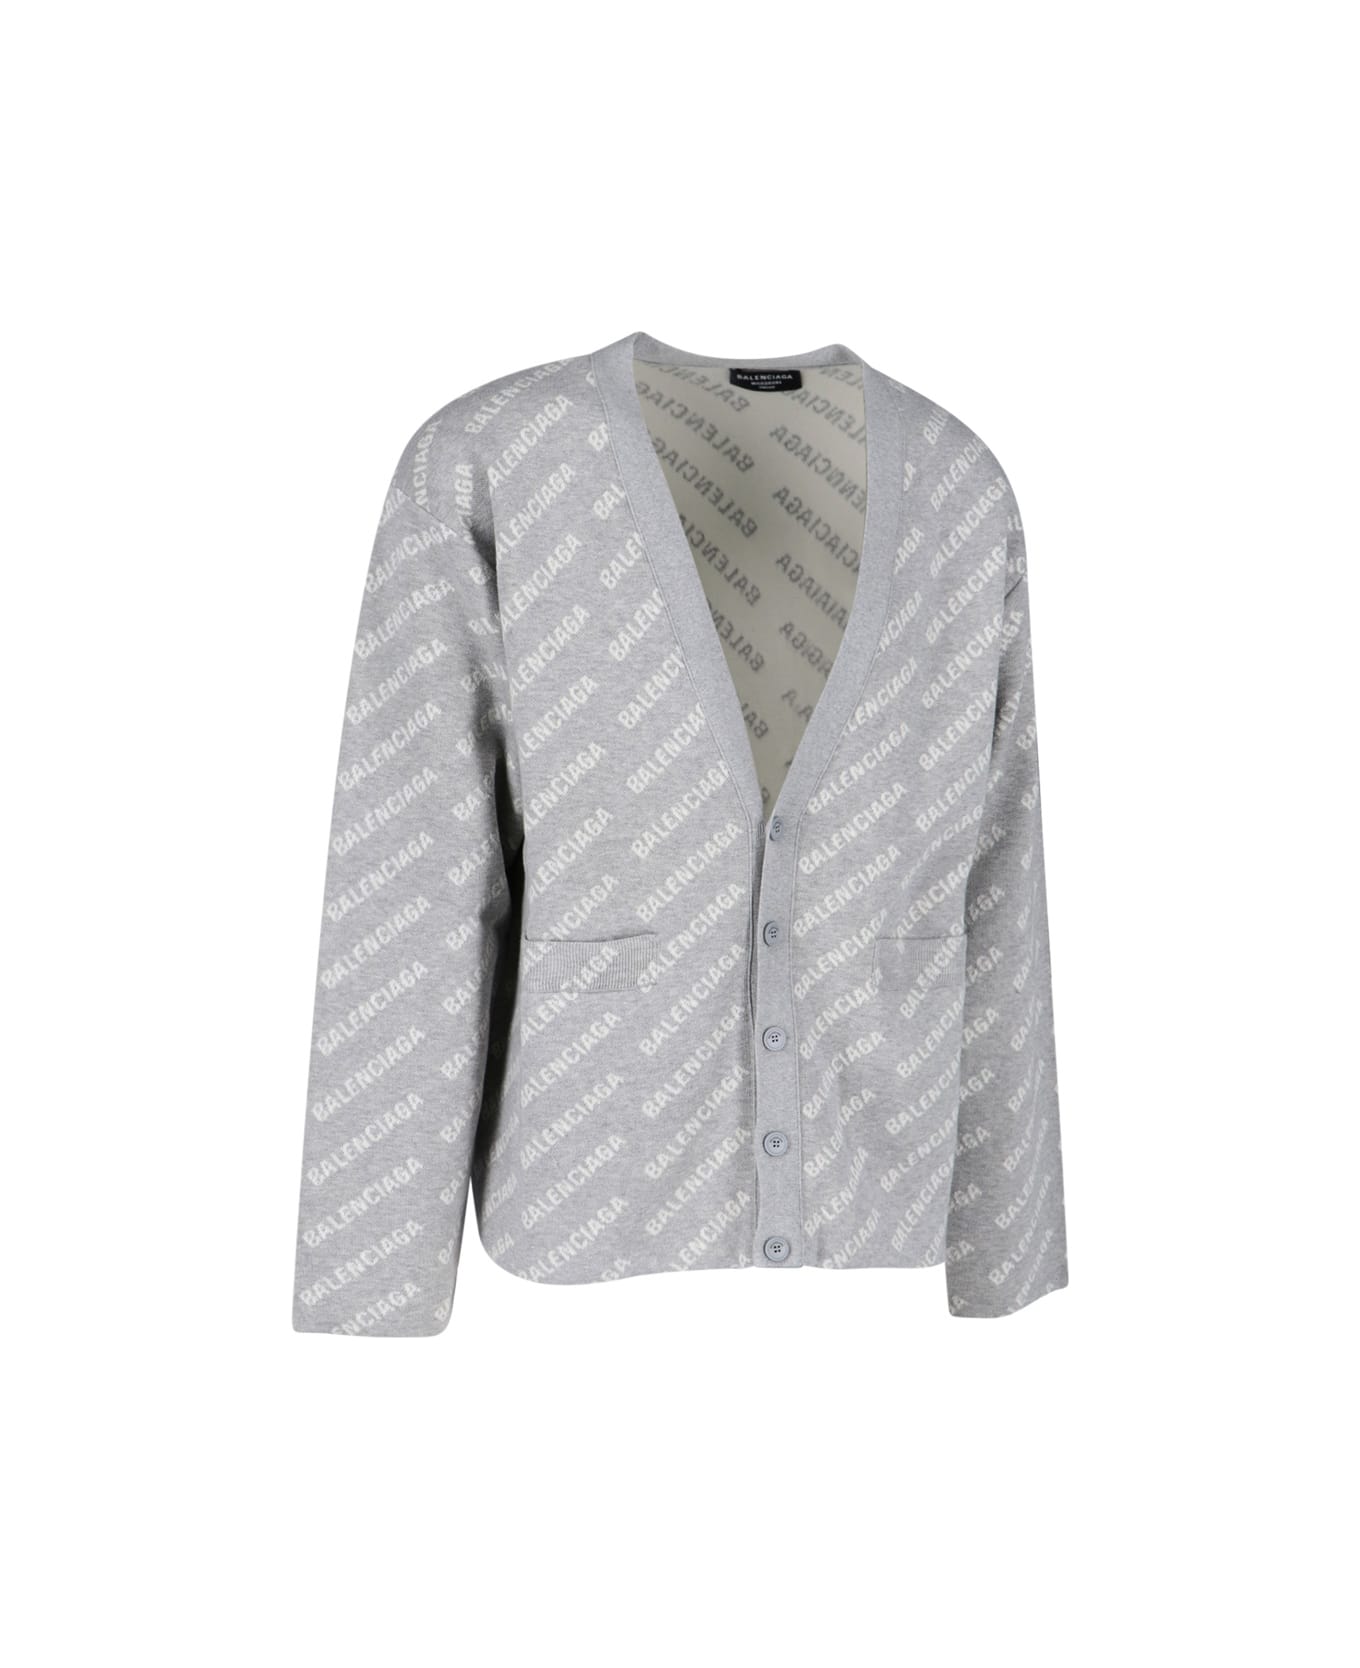 Balenciaga Sweater - Grigio e Bianco